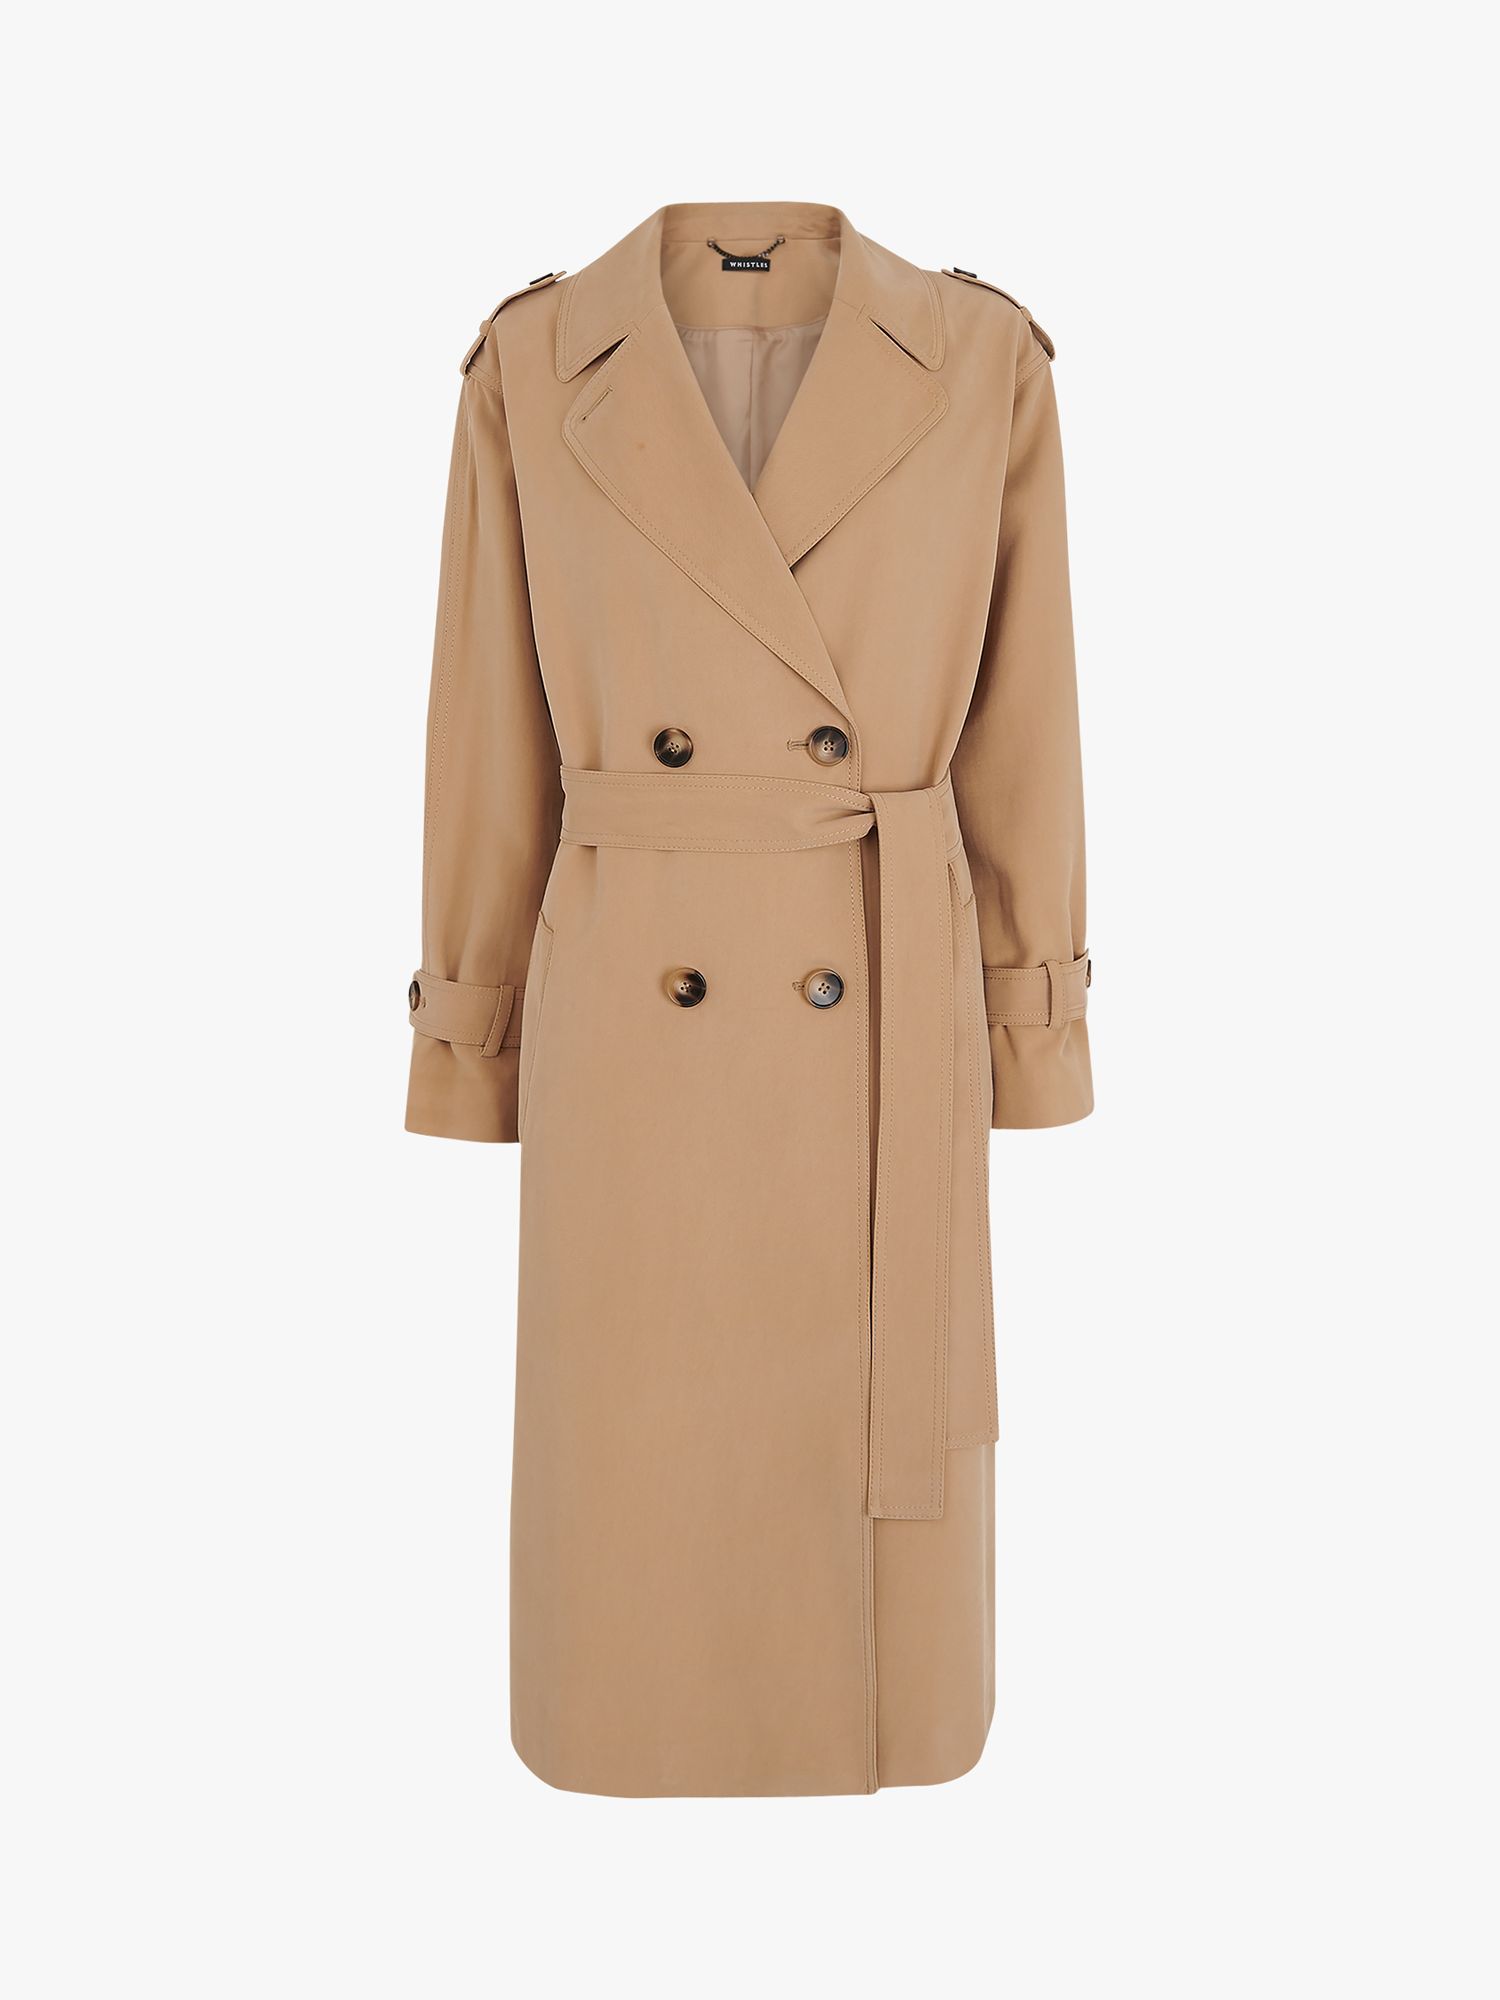 Black L WOMEN FASHION Coats Elegant Fórmula Joven Trench coat discount 97% 